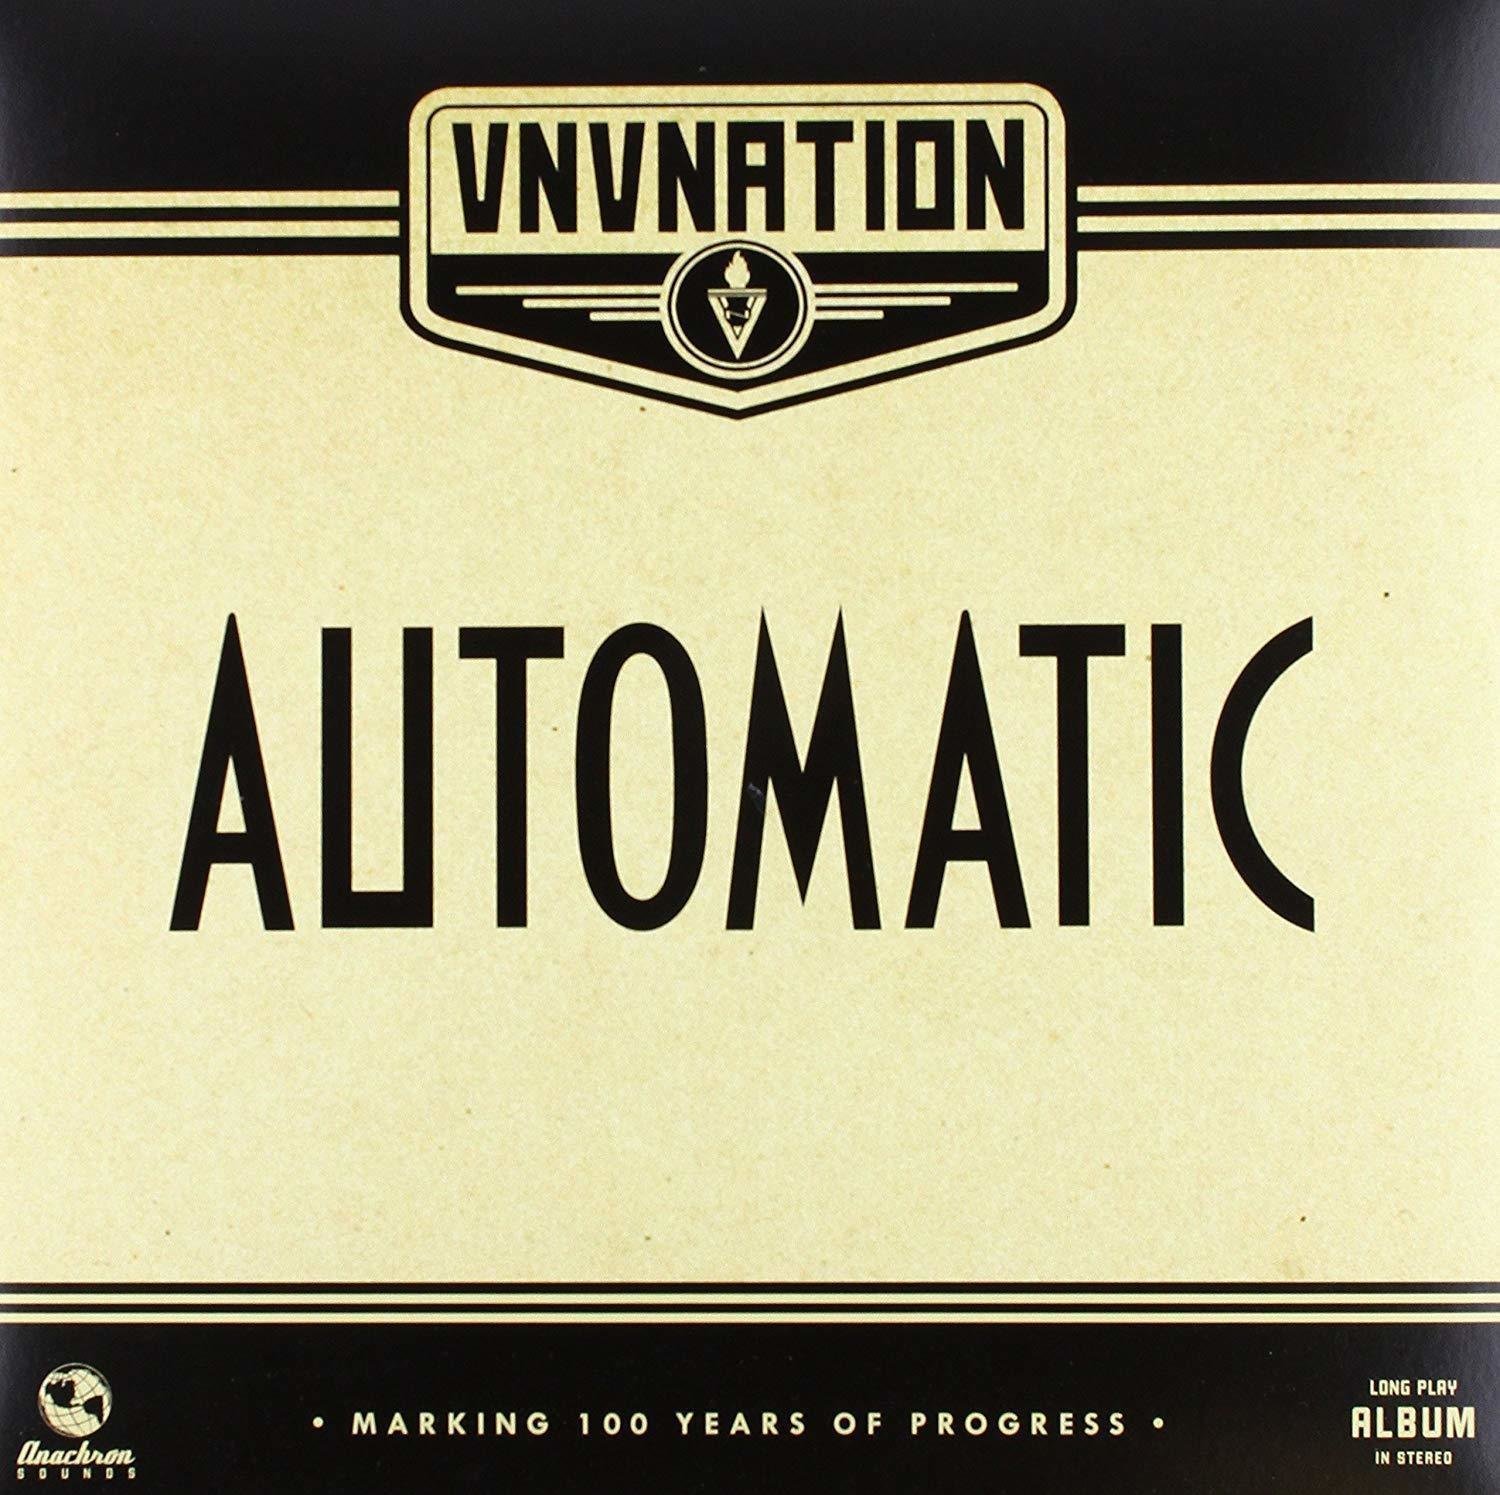 LP platňa Vnv Nation - Automatic (2 LP)